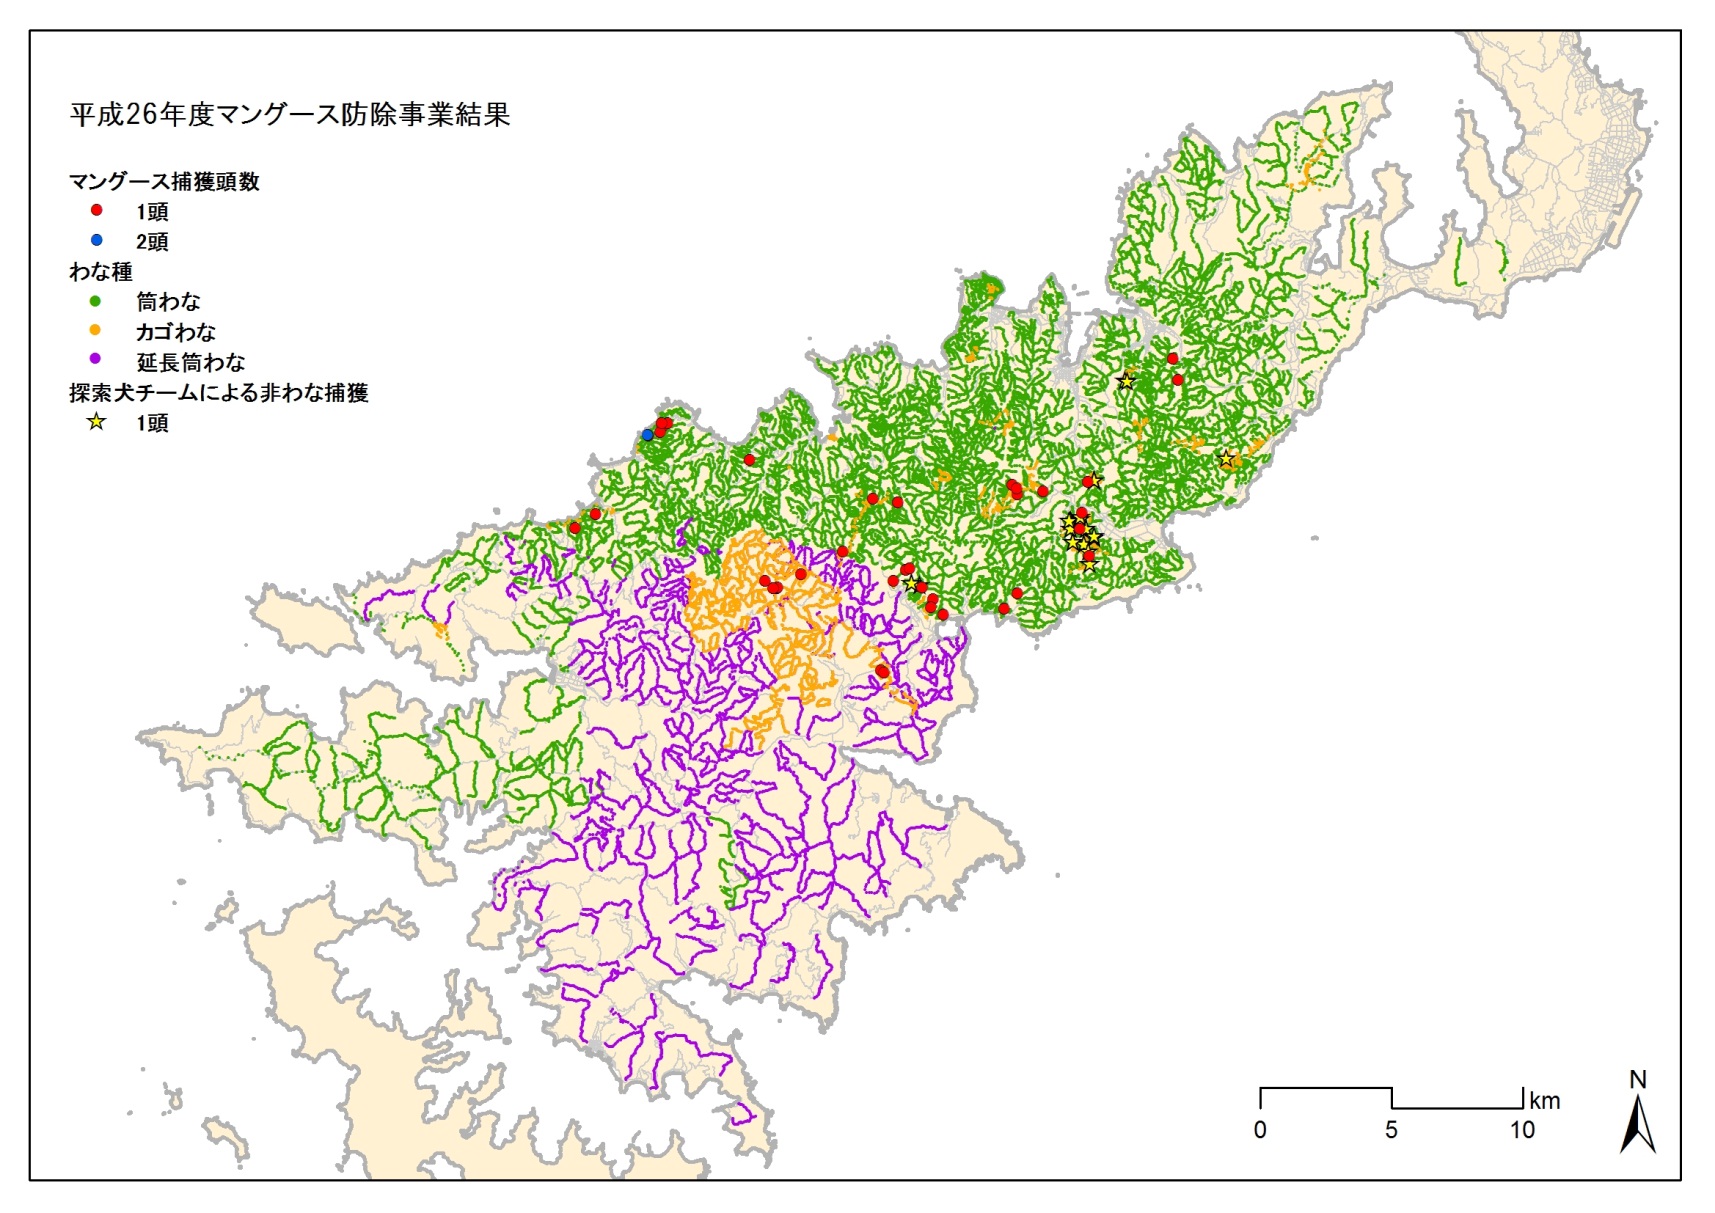 図1: 平成26年度　奄美大島におけるマングースのわな設置地点と捕獲地点